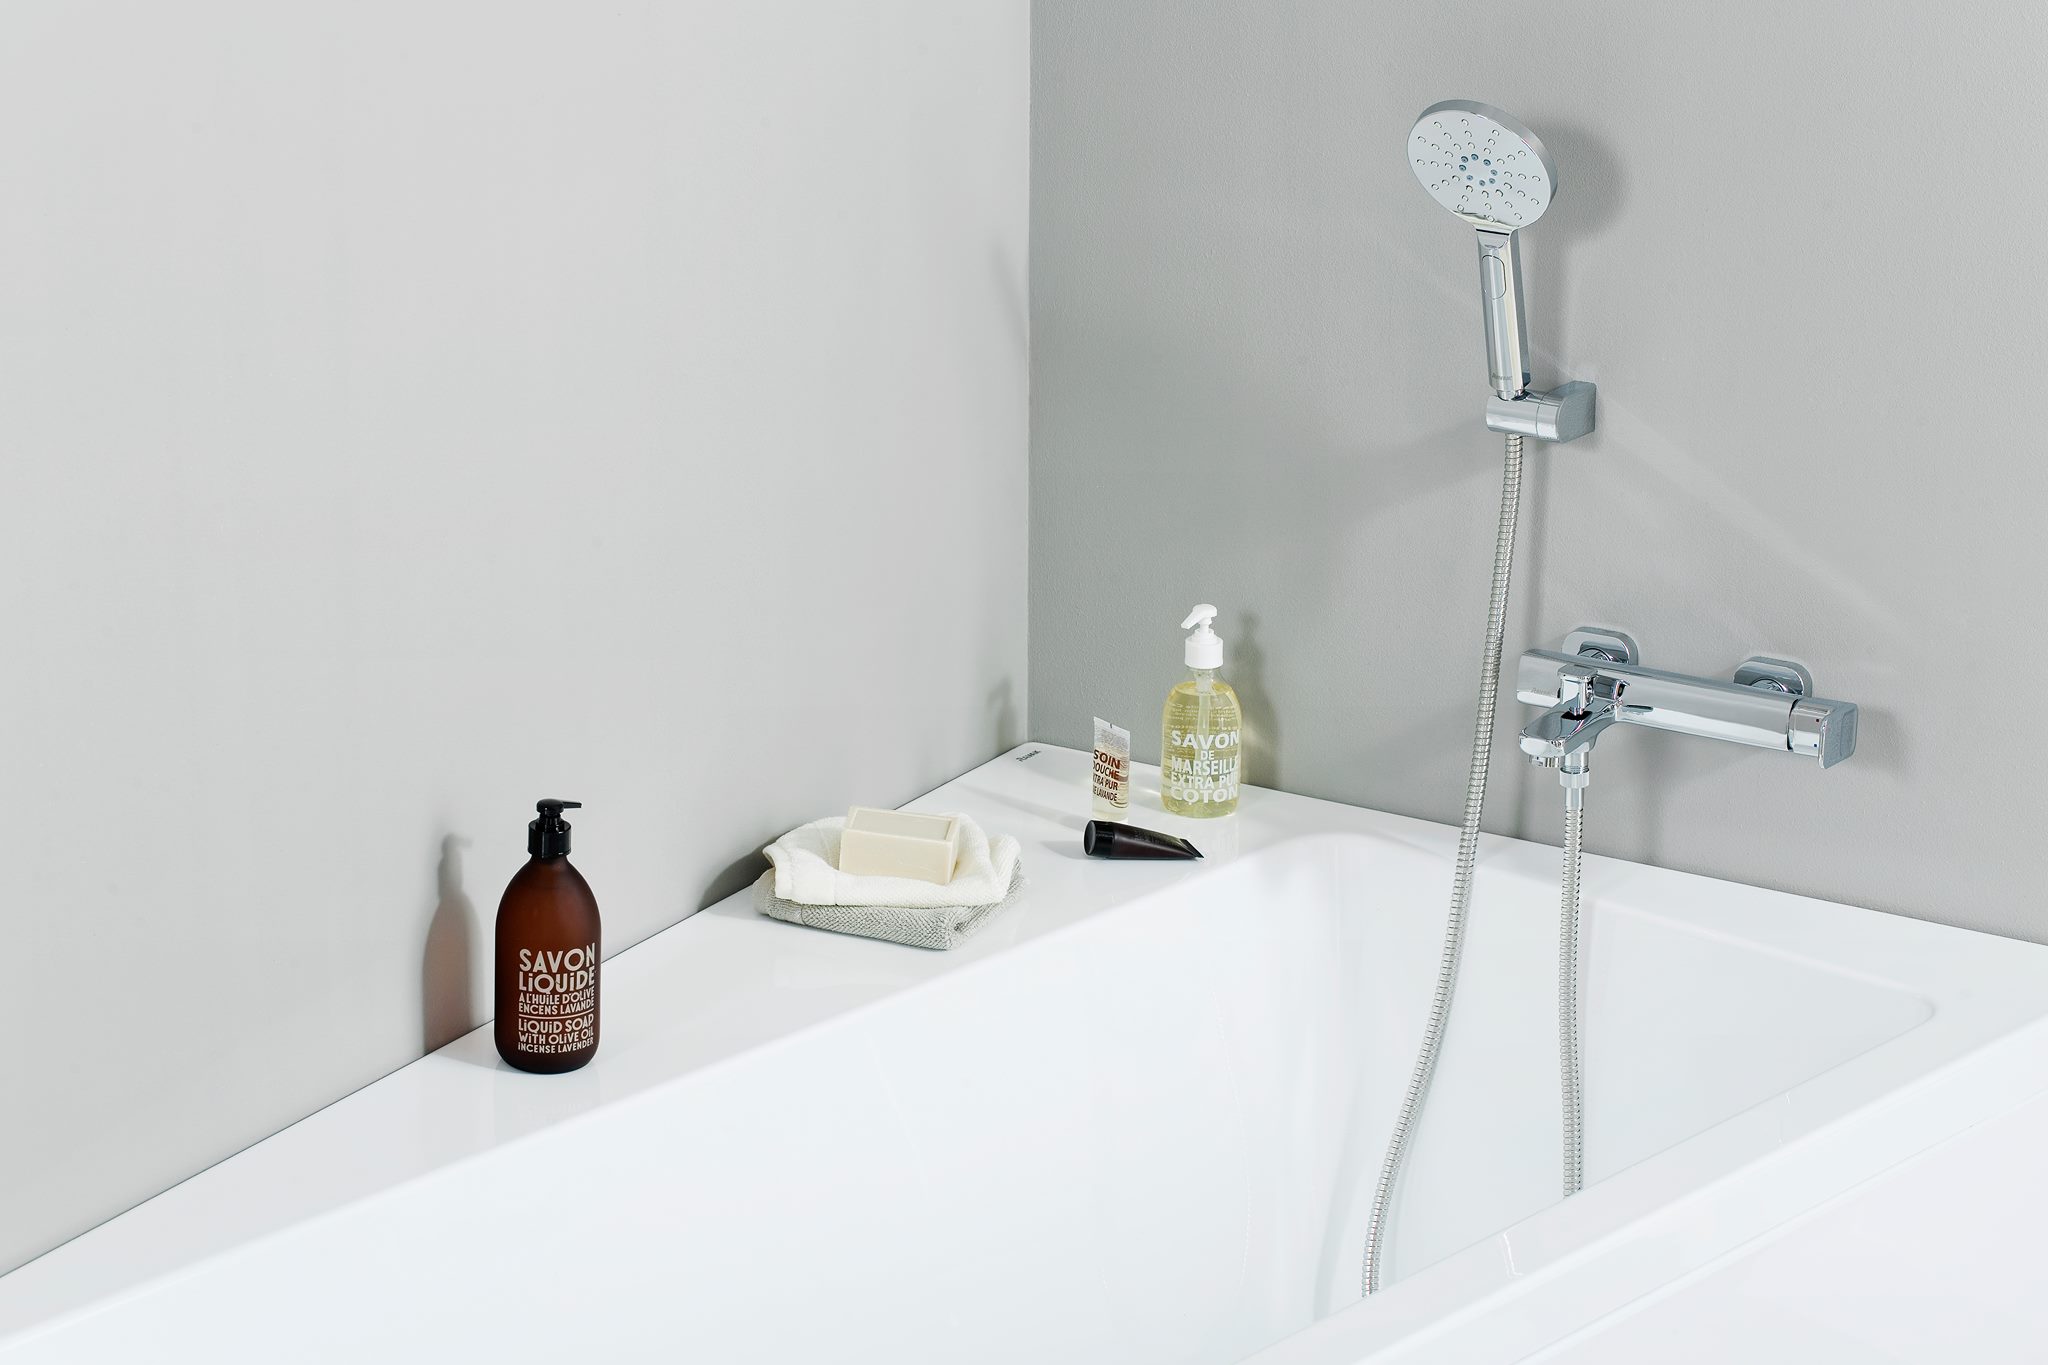 A gyönyörűen megtervezett zuhanyfejek nem csak esztétikai élményt nyújtanak, hanem műszakilag is megállják a helyüket. 